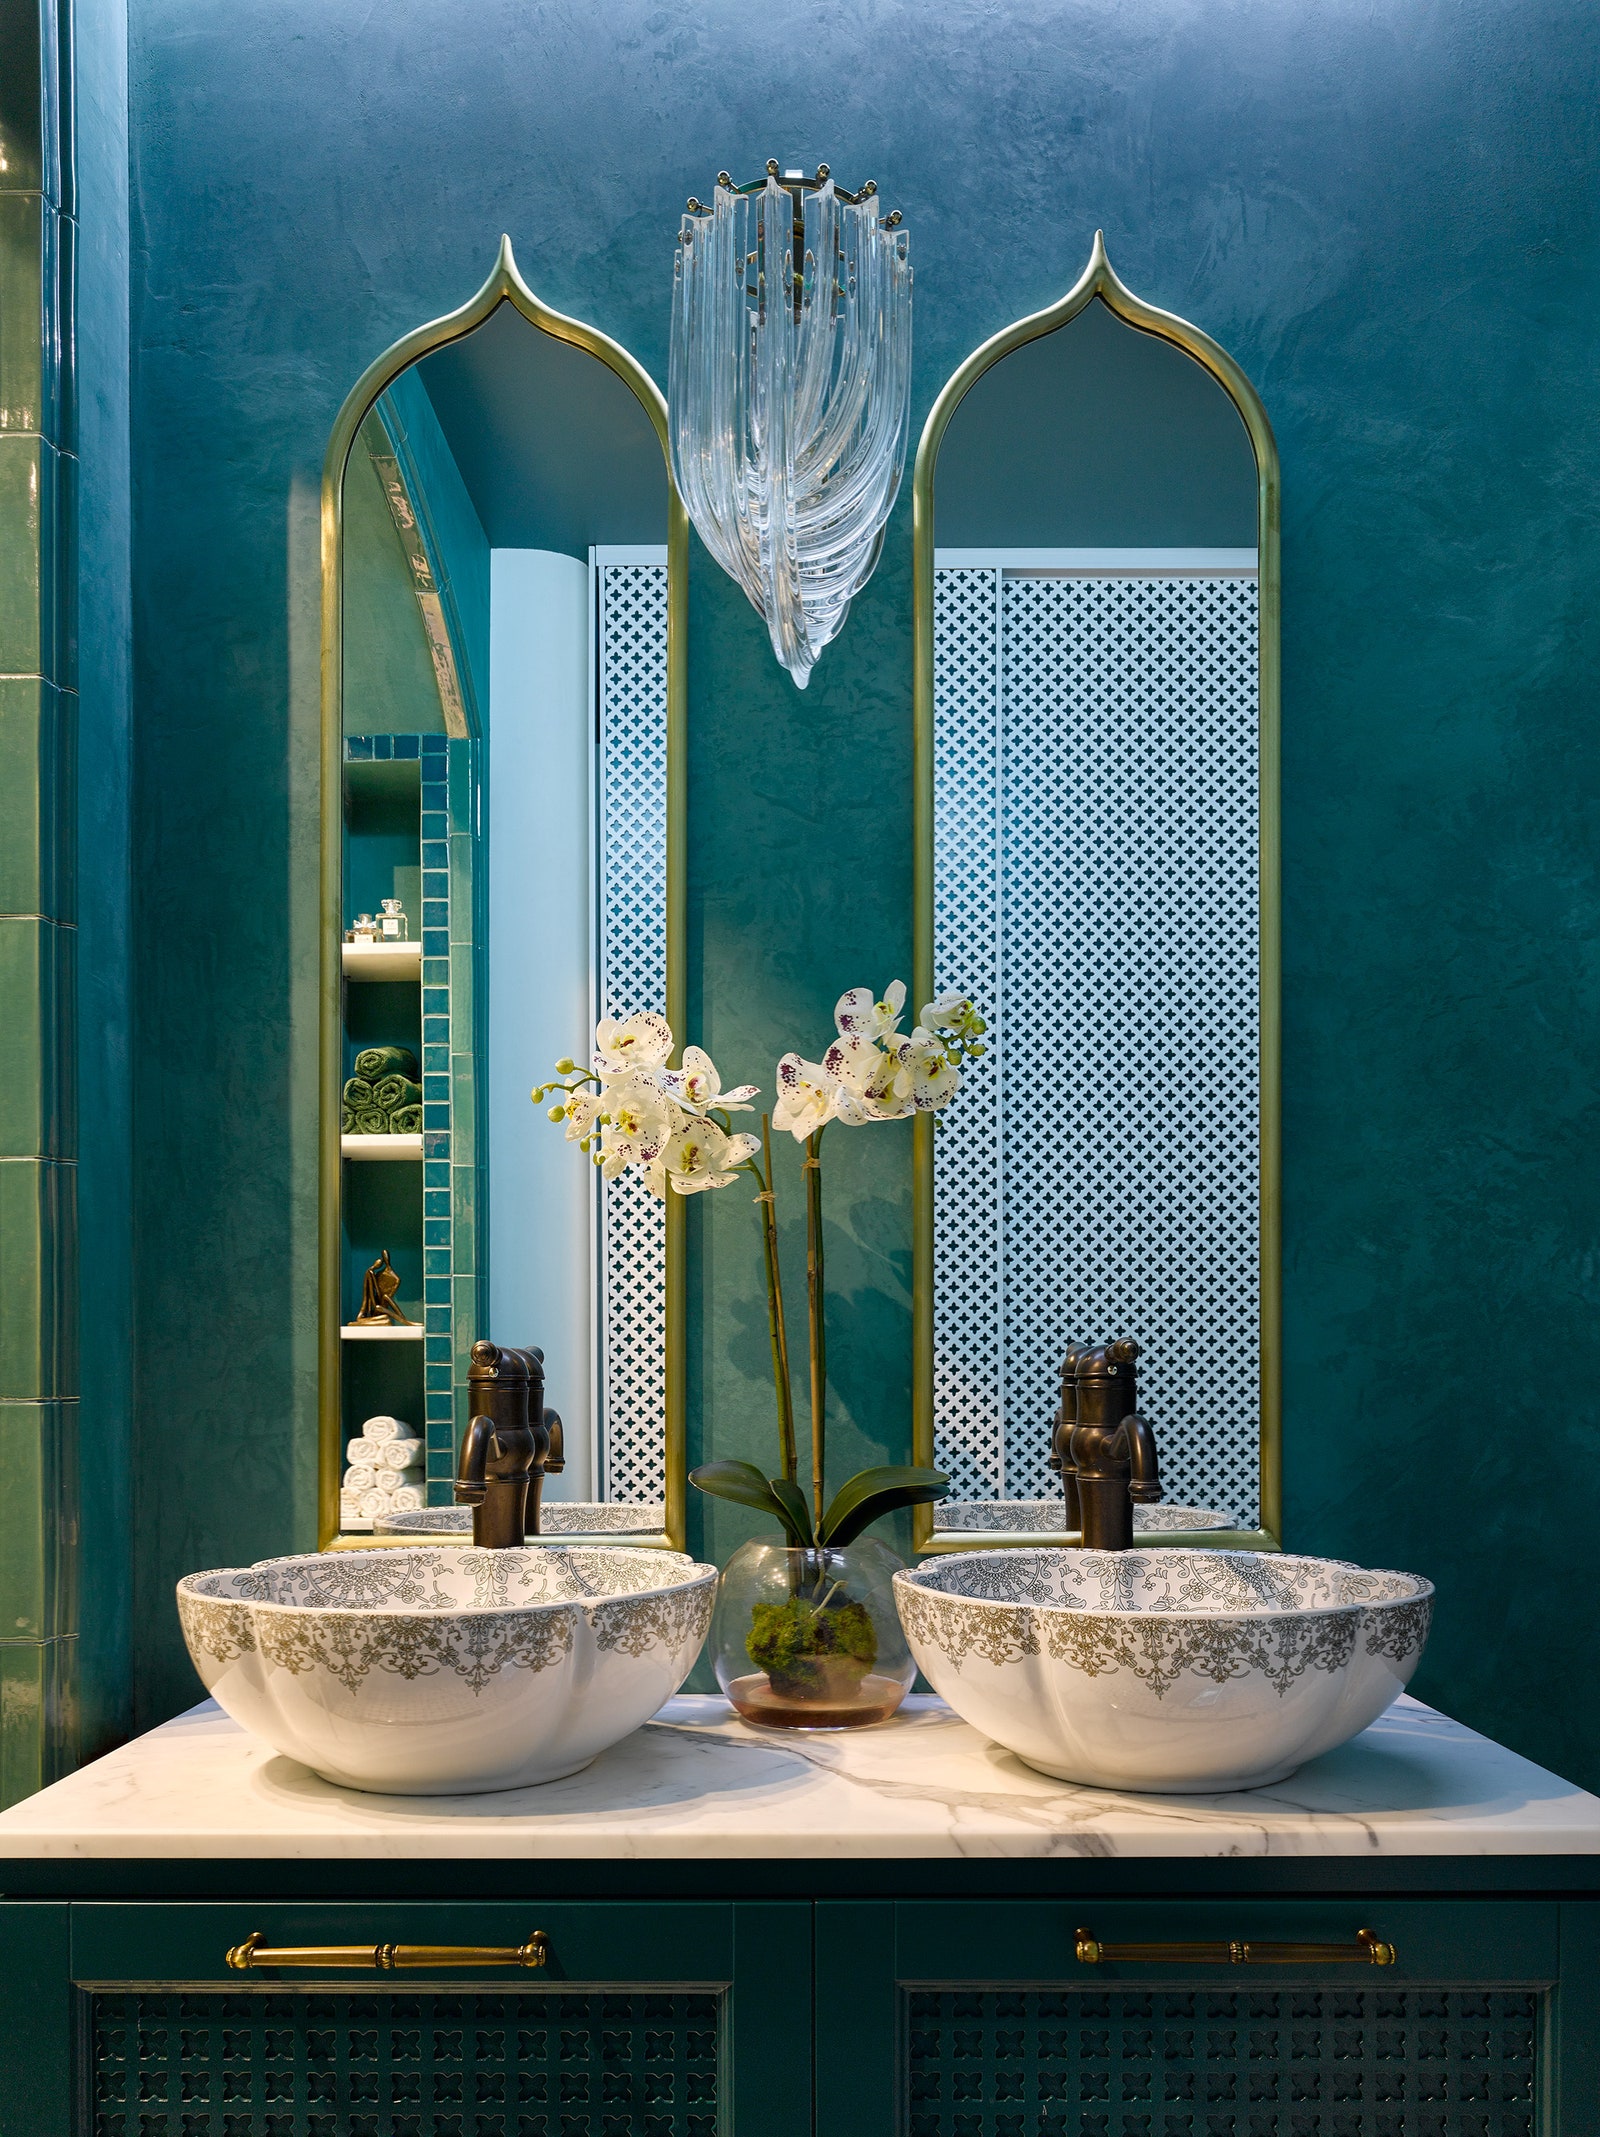 Ванная комната. Зеркала с окантовкой из латуни и подстолье для раковины сделаны на заказ сантехника Nicolazzi. Стены...